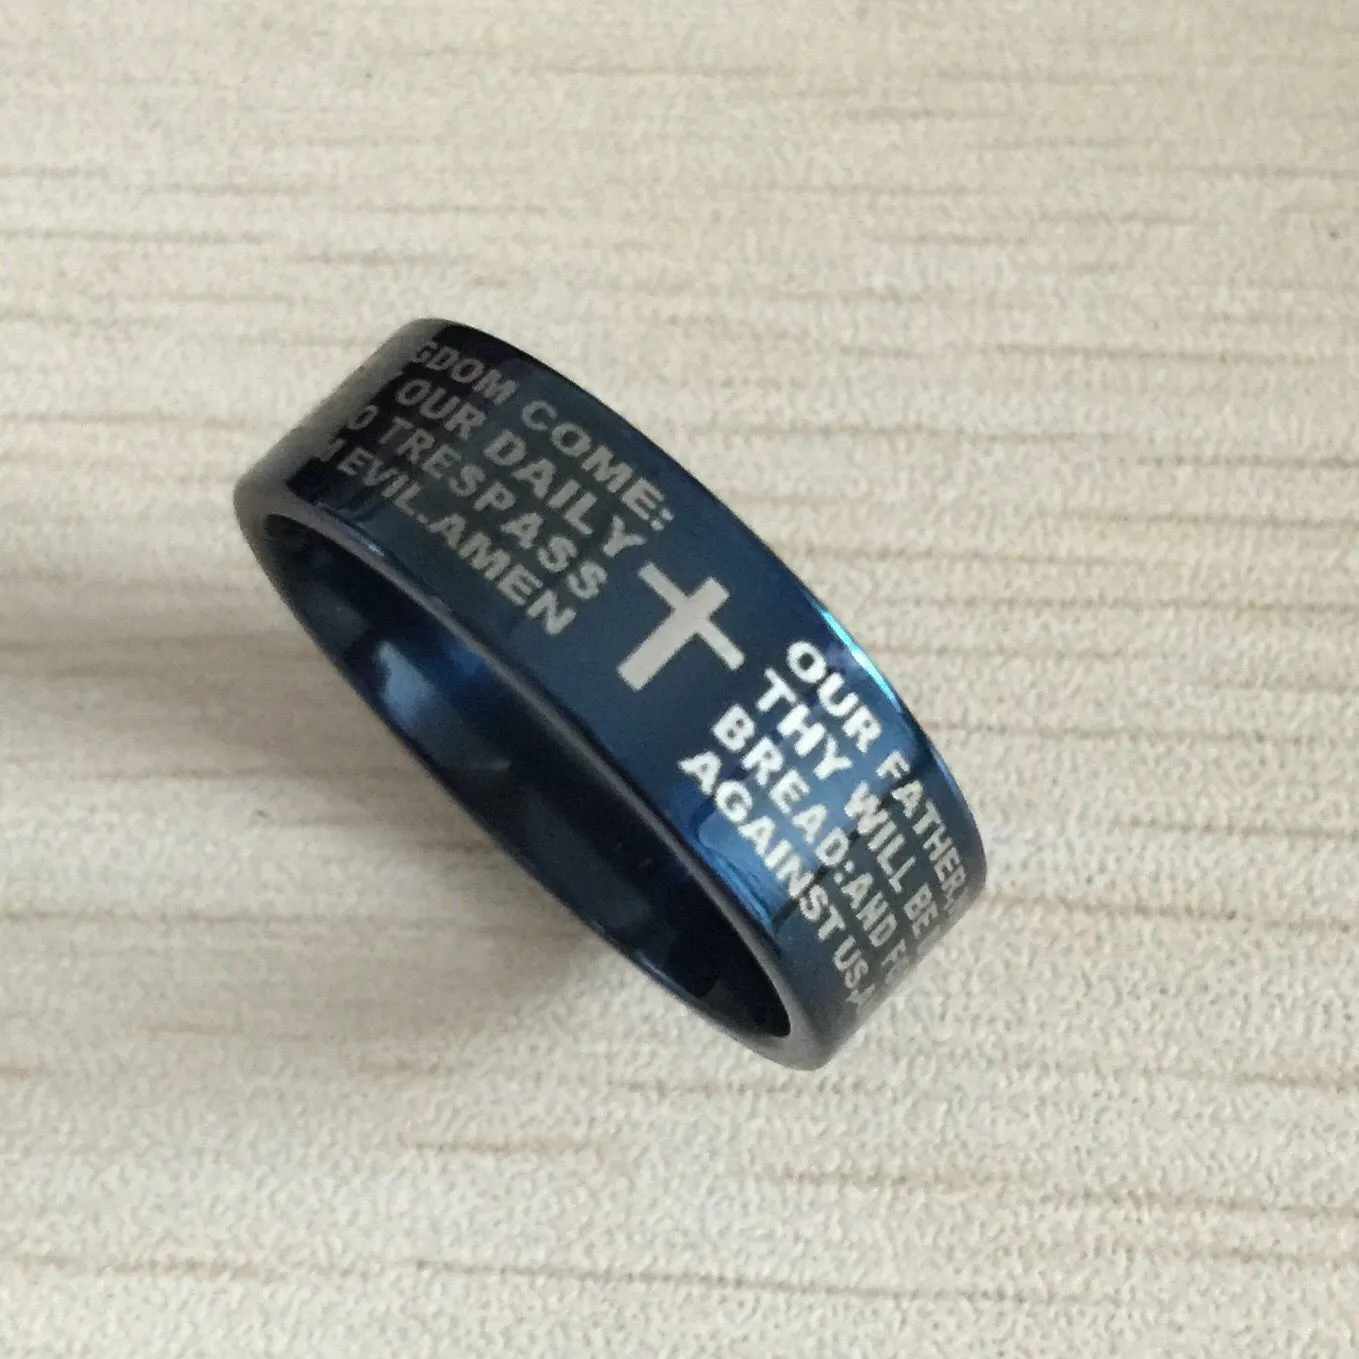 Blue men inglese bibbia anello 8mm 316 titanio acciaio croce lettera preghiera bibbia fede nuziale il signore dell'anello uomini donne